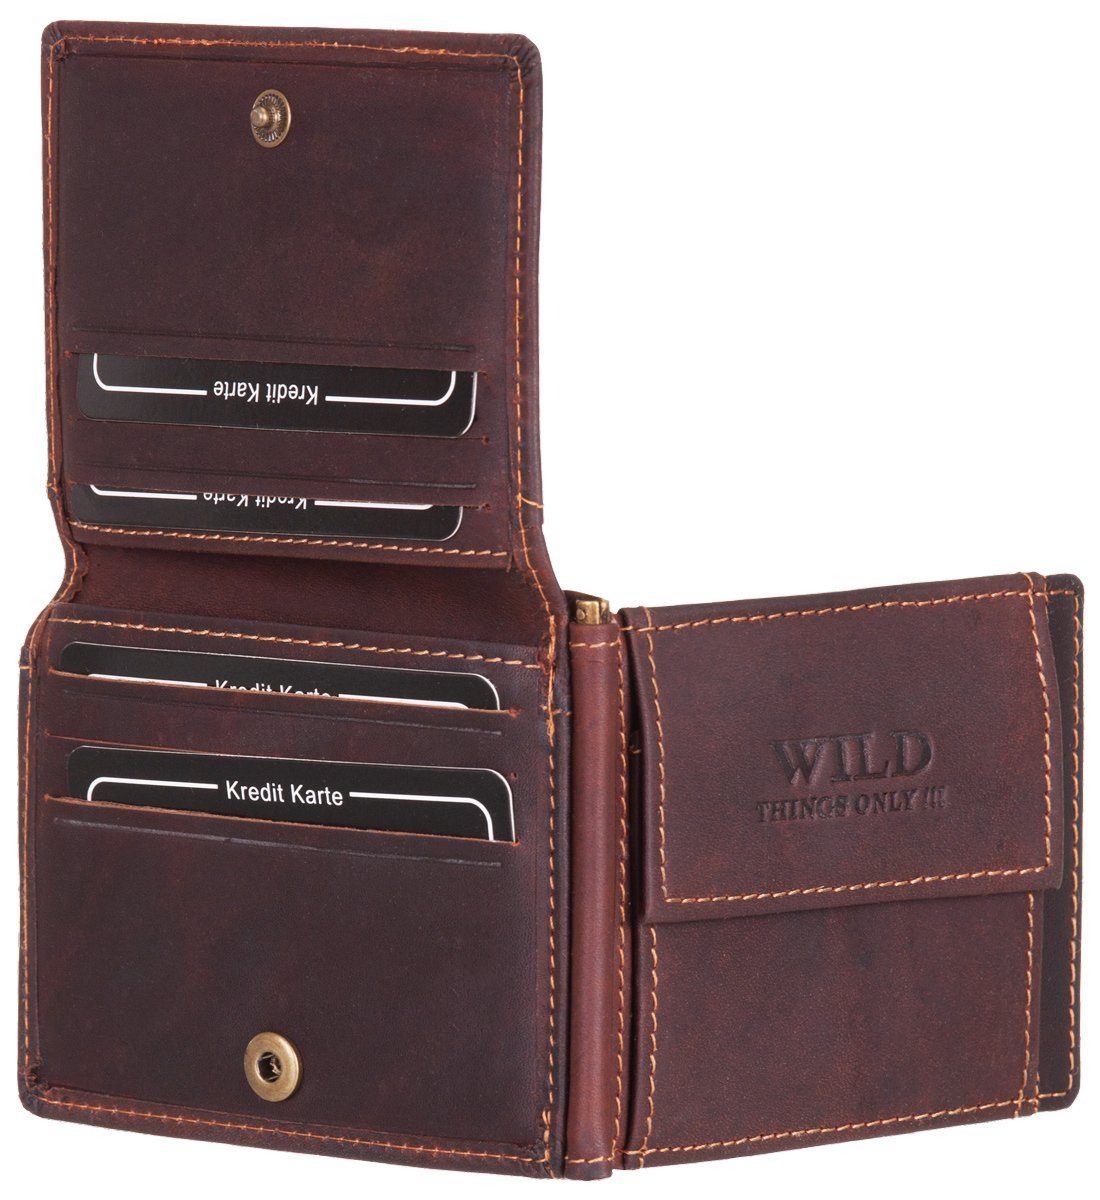 mit Geldbörse, Geldklammer Geldbeutel braun Leder RFID-Schutz Echt STREET Geldclip Portemonnaie Münzfach BAG